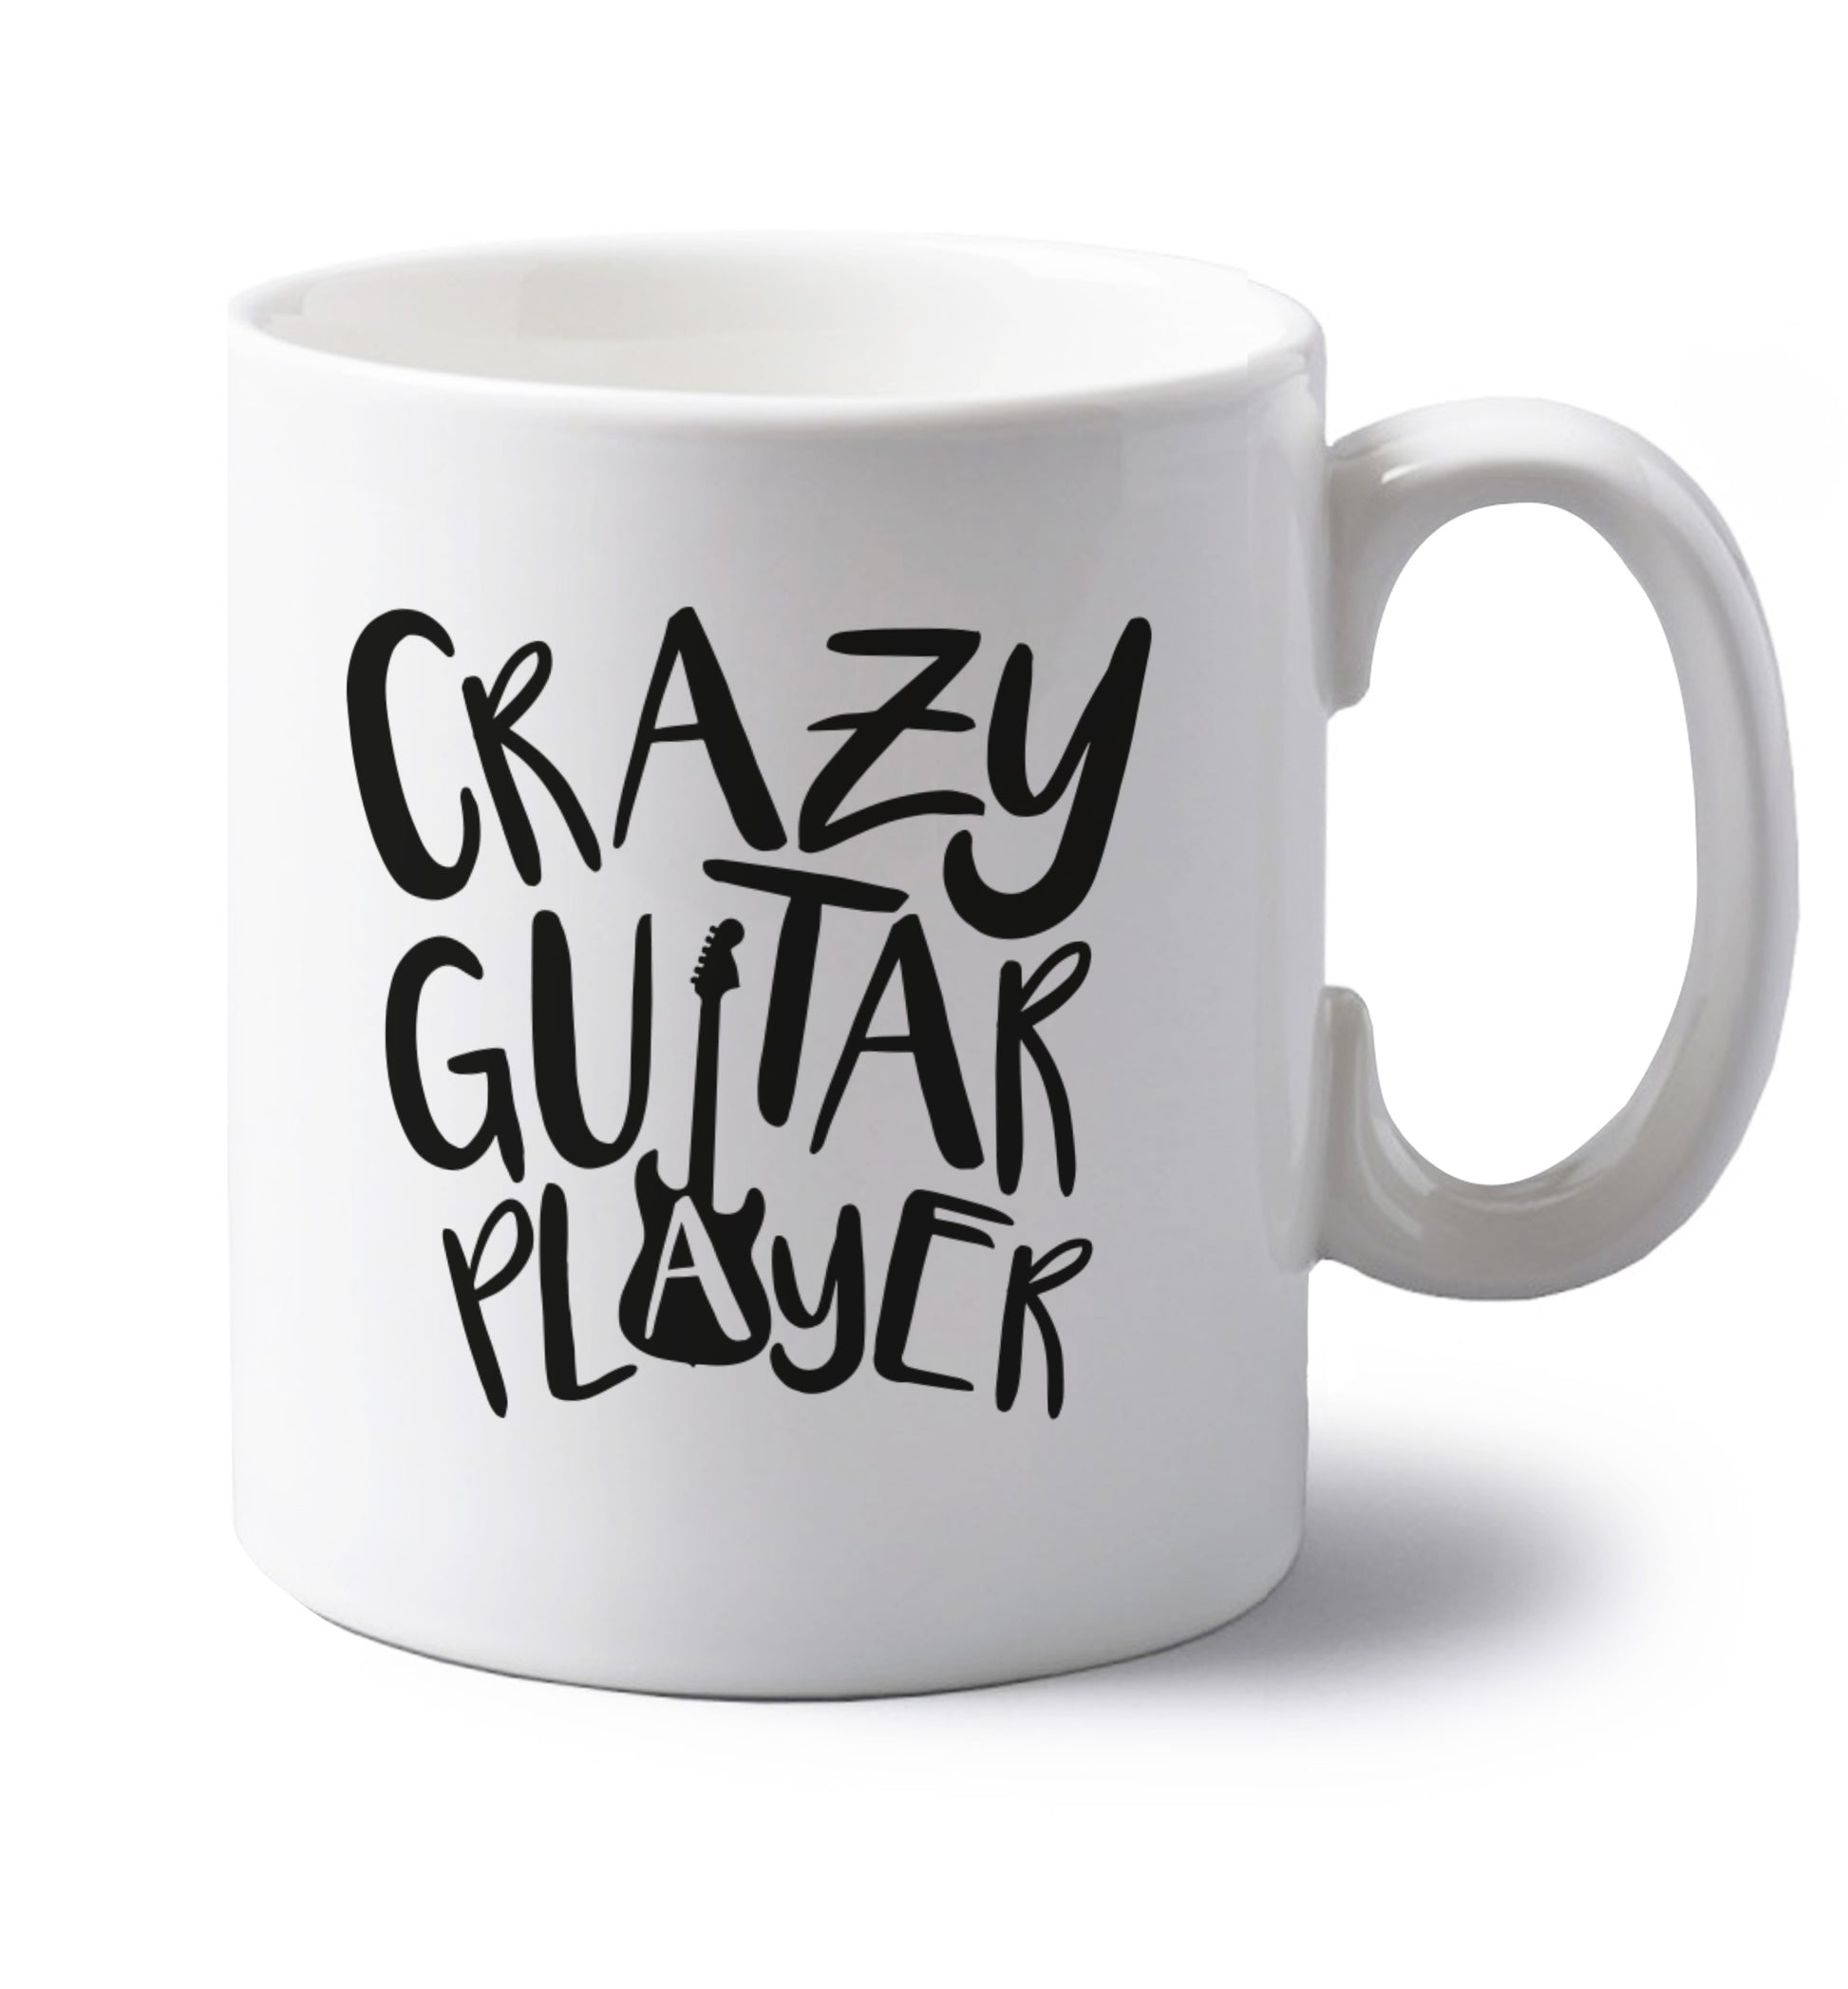 Crazy guitar player left handed white ceramic mug 